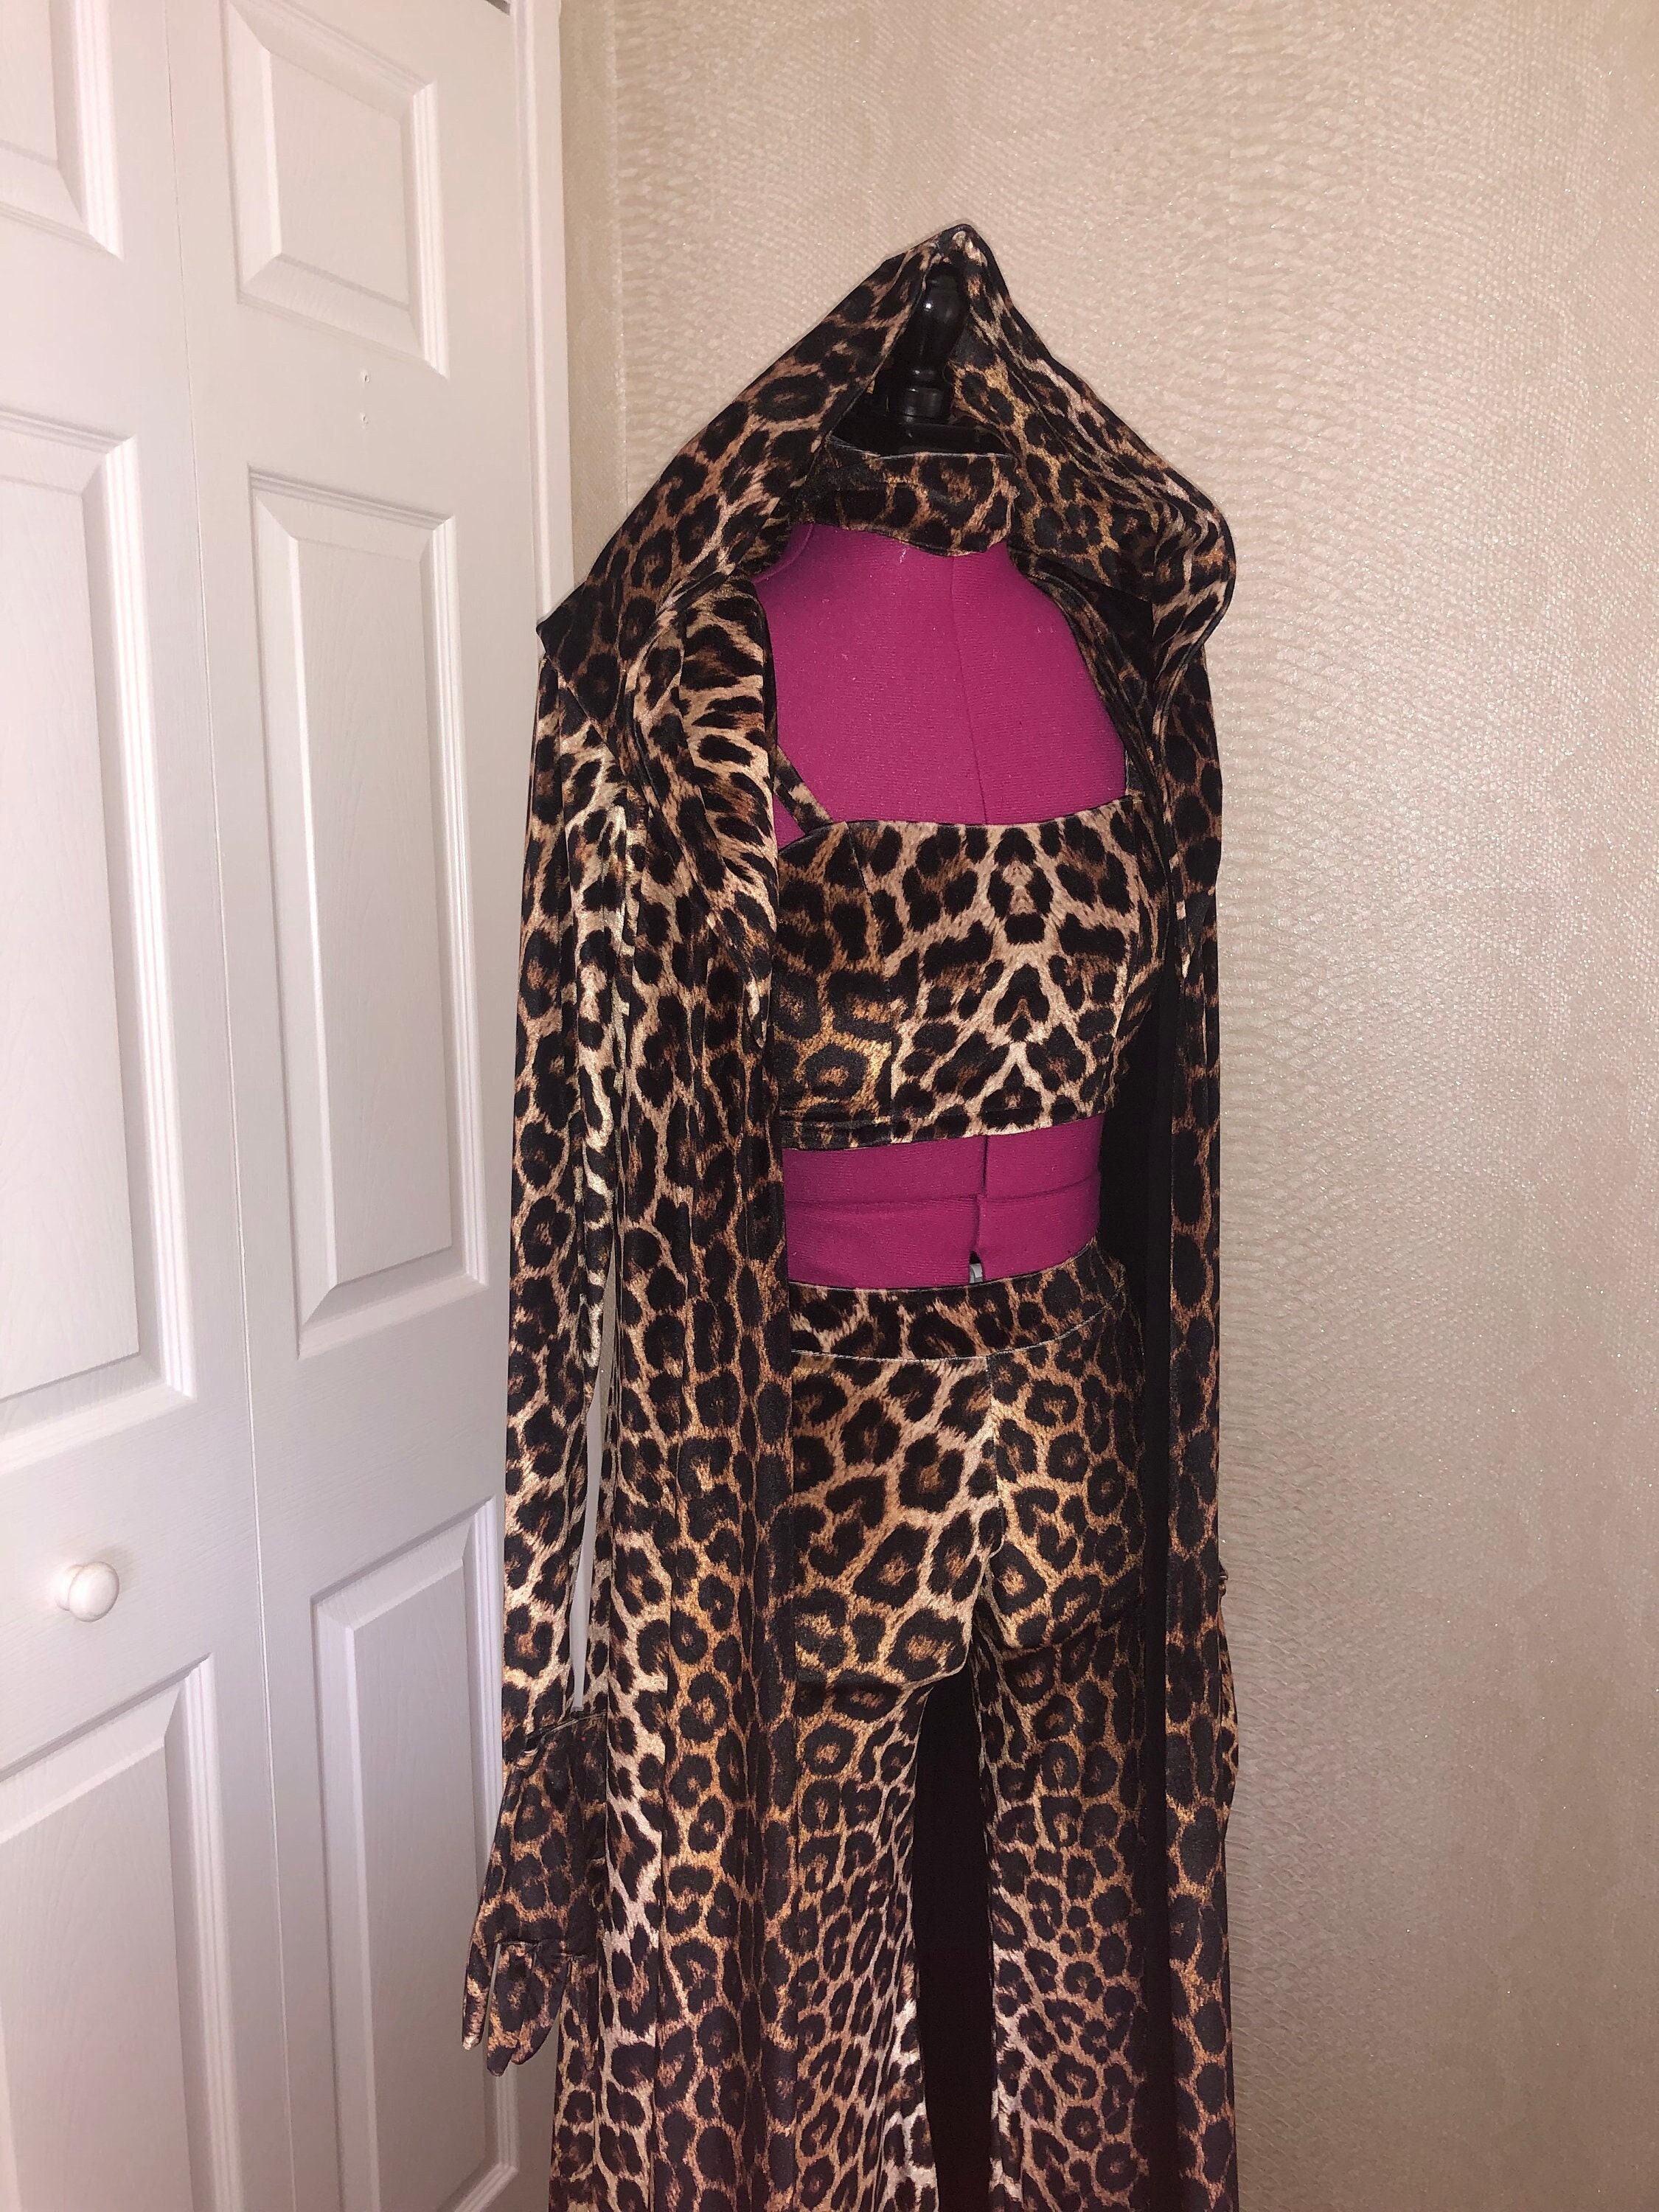 Shania Twain Leopard Costume - Etsy Canada